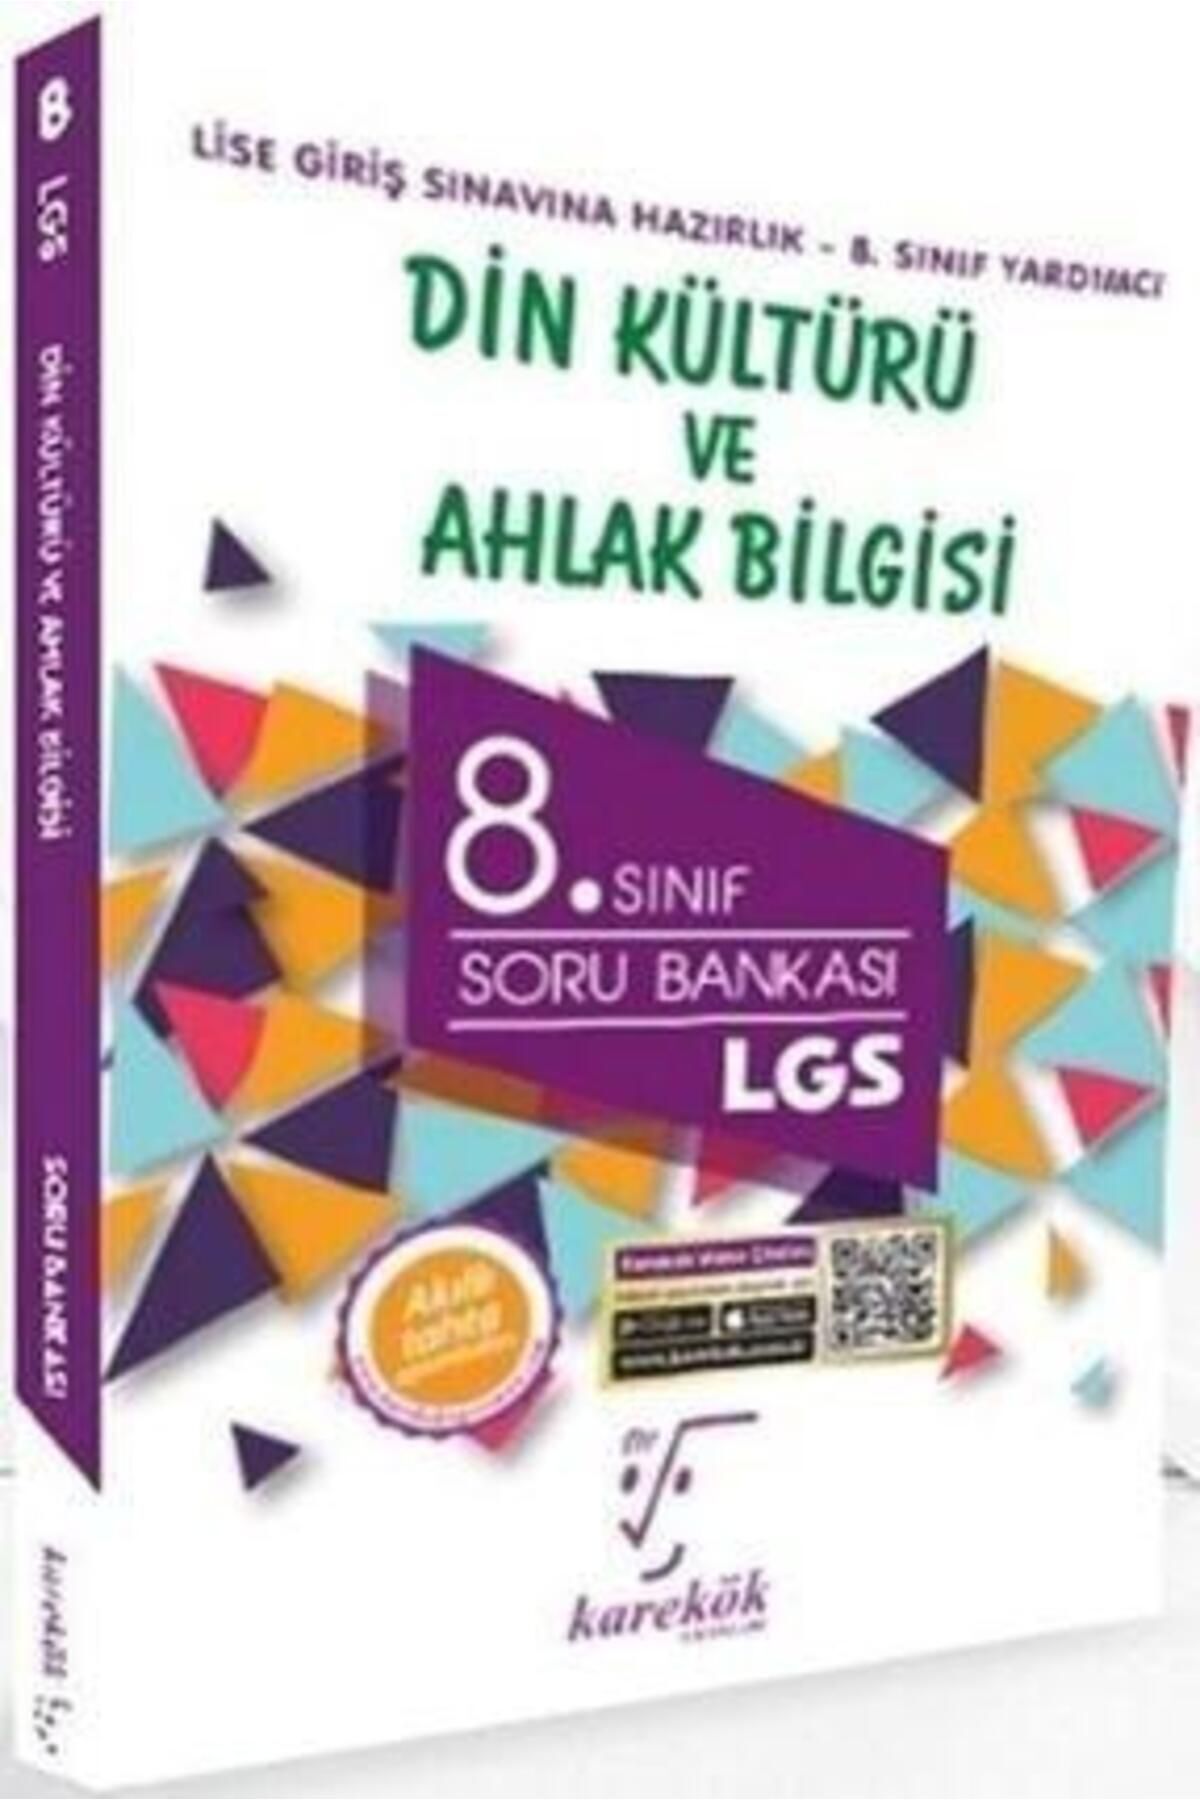 Karekök Yayınları Karekök 8. Sınıf Lgs Din Kültürü Ve Ahlak Bilgisi Soru Bankası